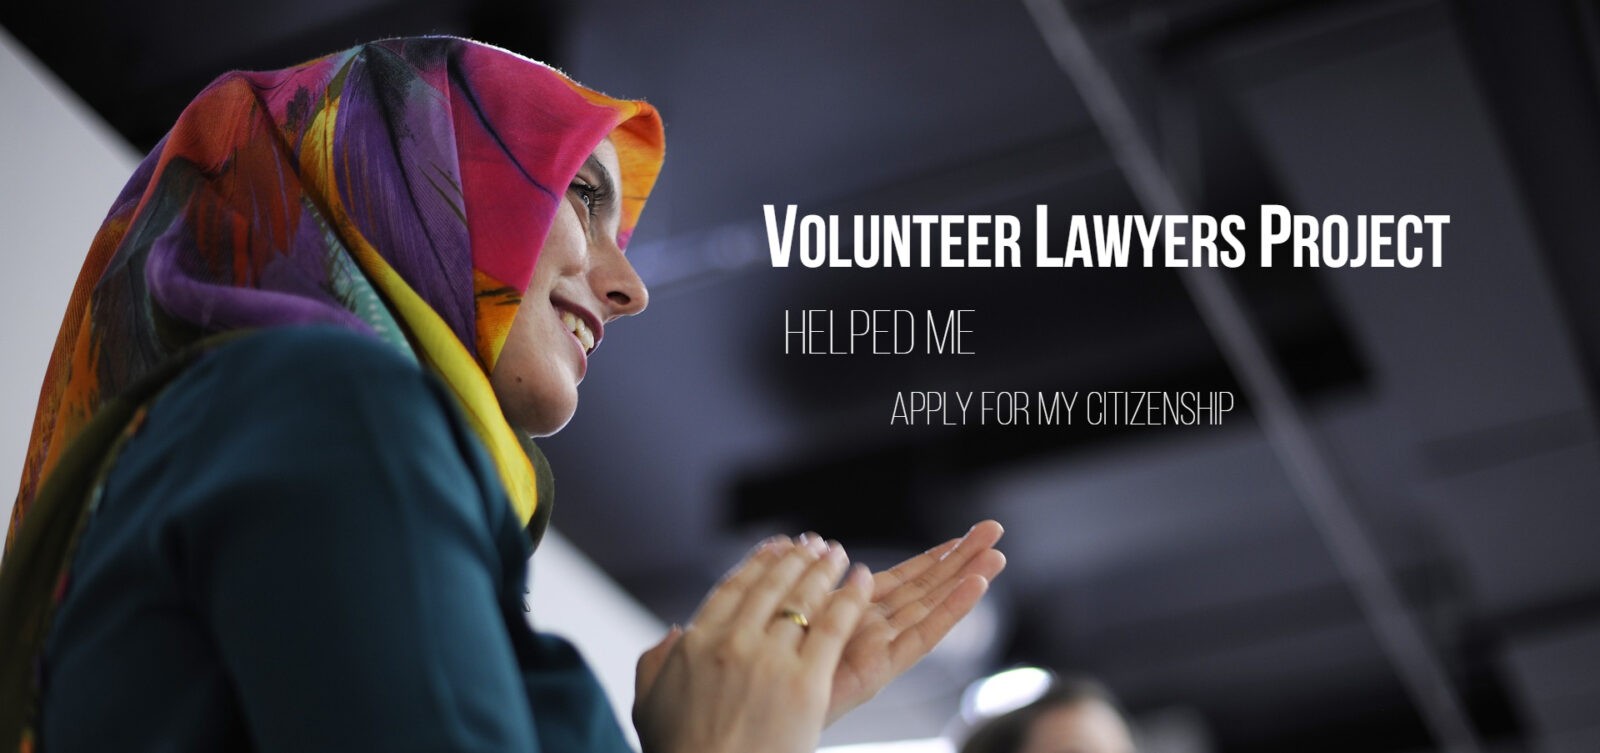 Volunteer Resources  ECBA Volunteer Lawyers Project